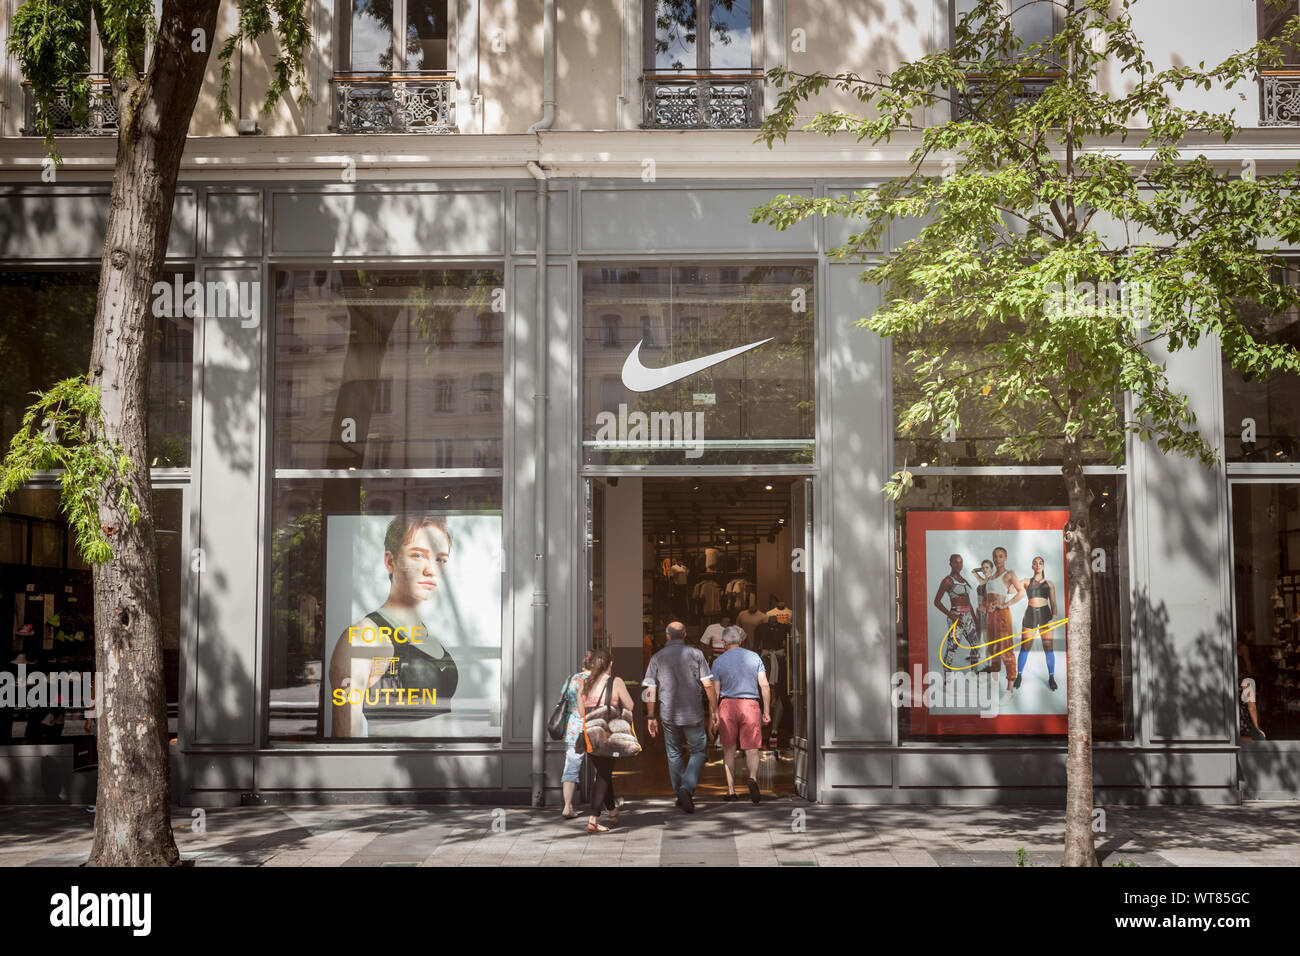 LYON, Frankreich - 13. JULI 2019: Nike Logo auf ihren wichtigsten Store für Lyon. Nike ist eine amerikanische Marke Sportbekleidung und Schuhe, berühmt für seine Athleti Stockfoto